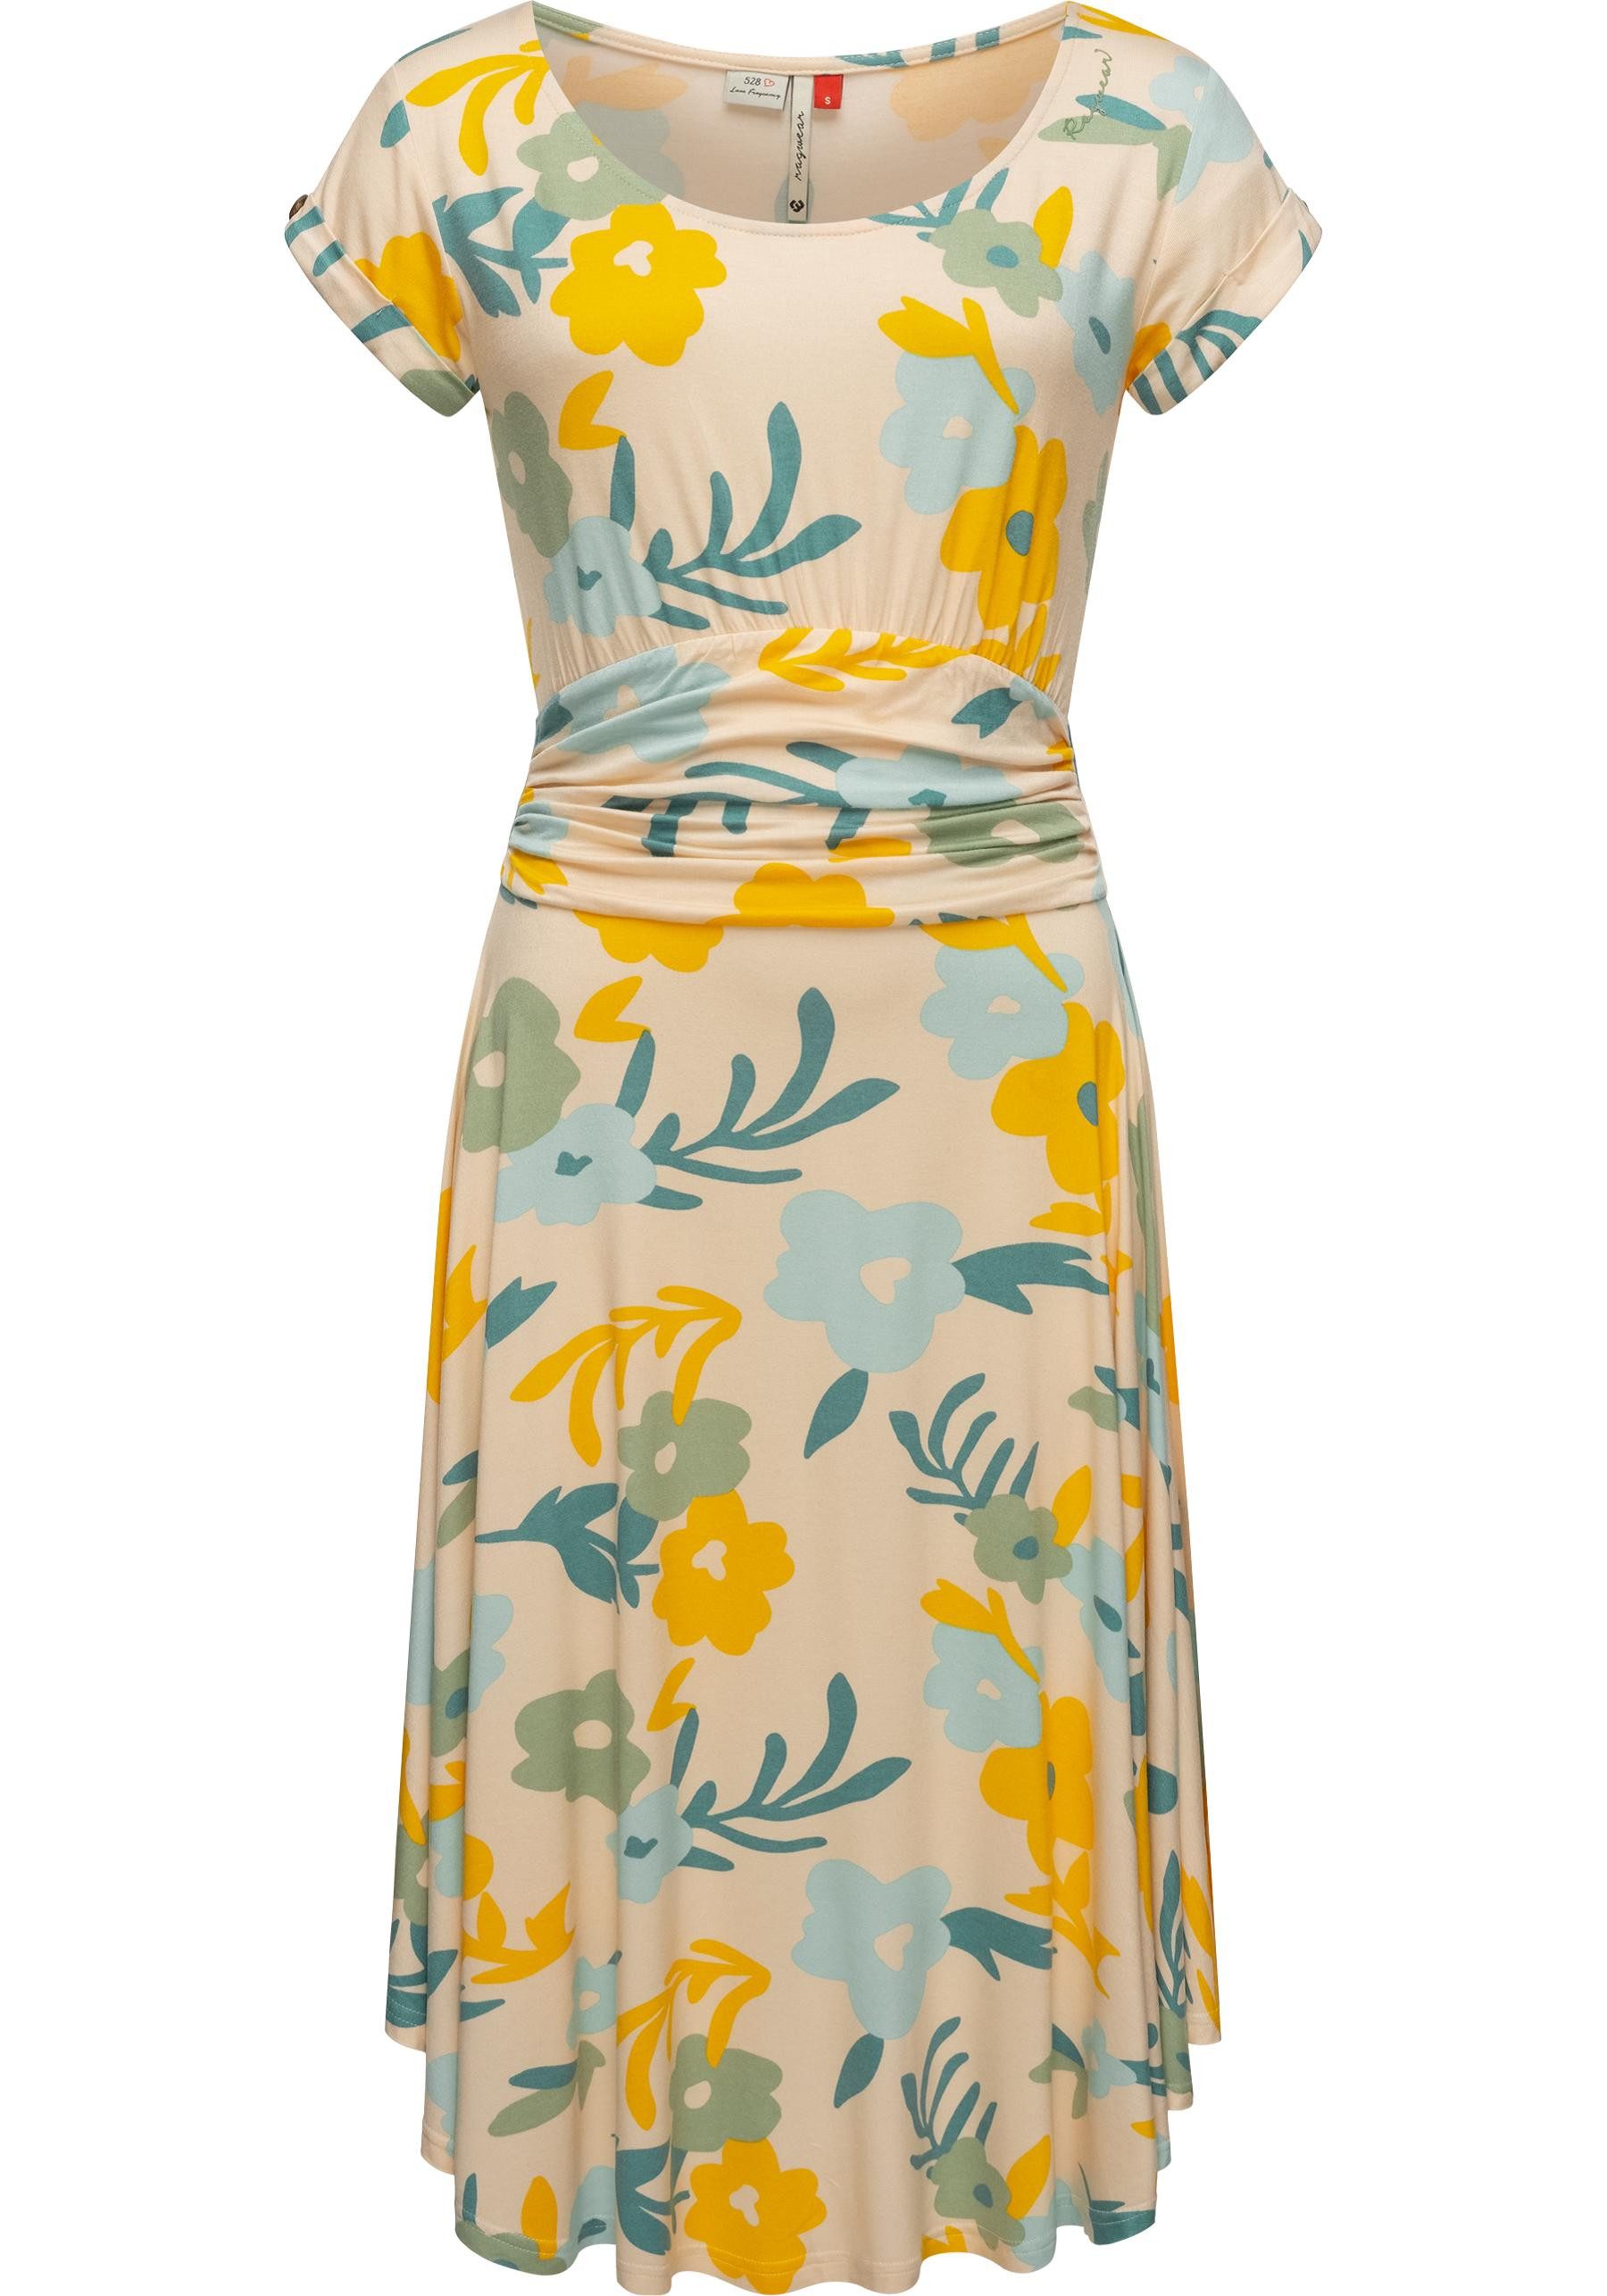 Ragwear Sommerkleid Yvone Flowers Leichtes Jersey-Kleid mit Taillengürtel